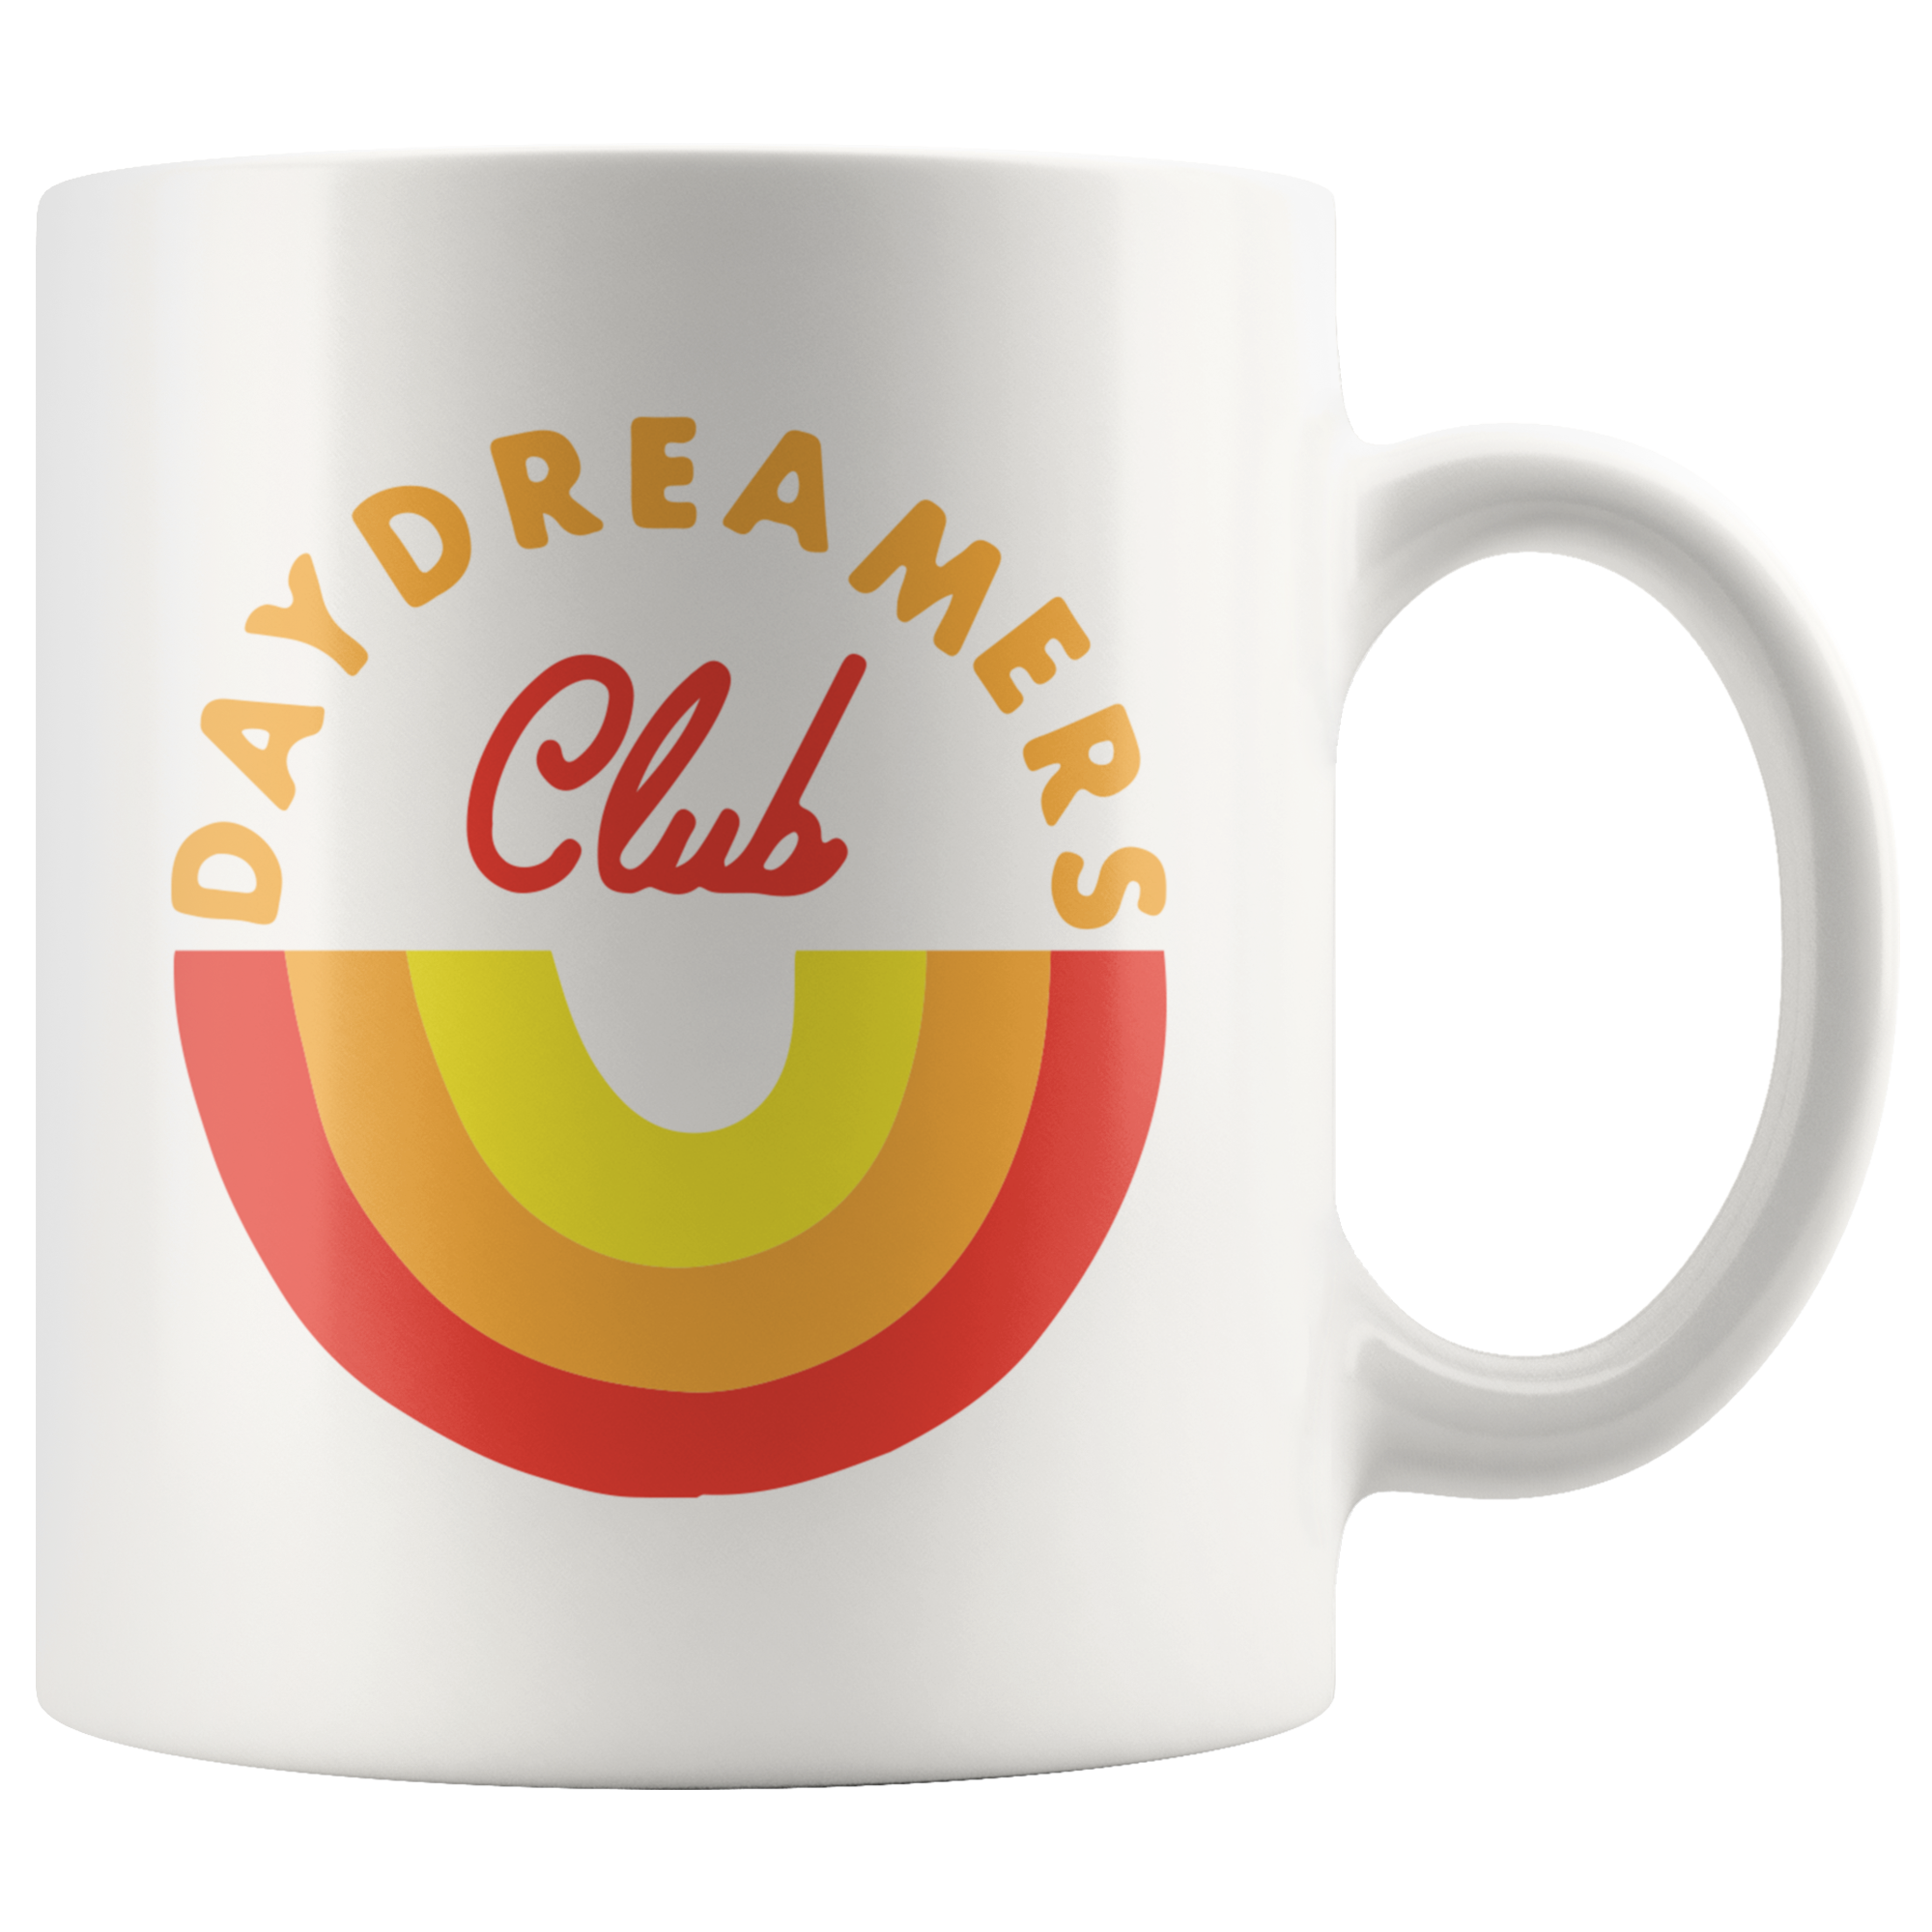 Daydreamers Club Coffee Mug